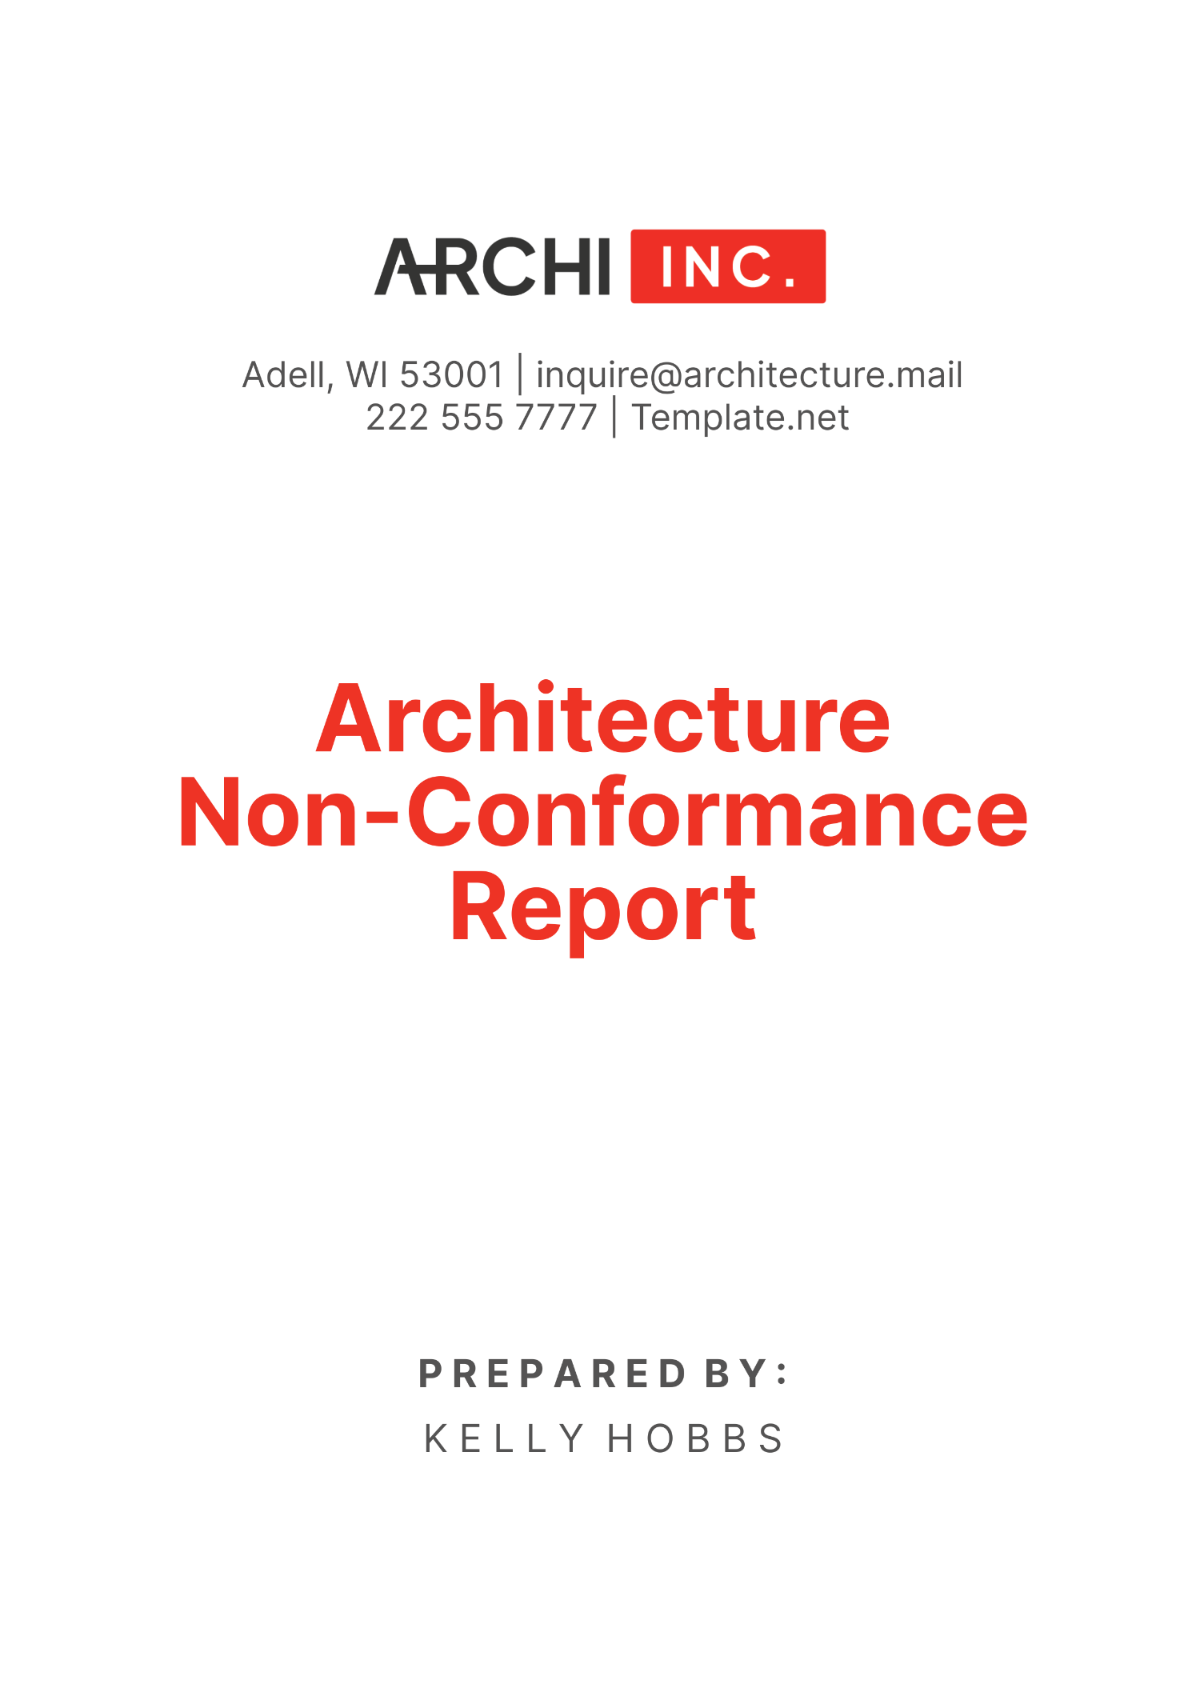 Architecture Non-Conformance Report Template